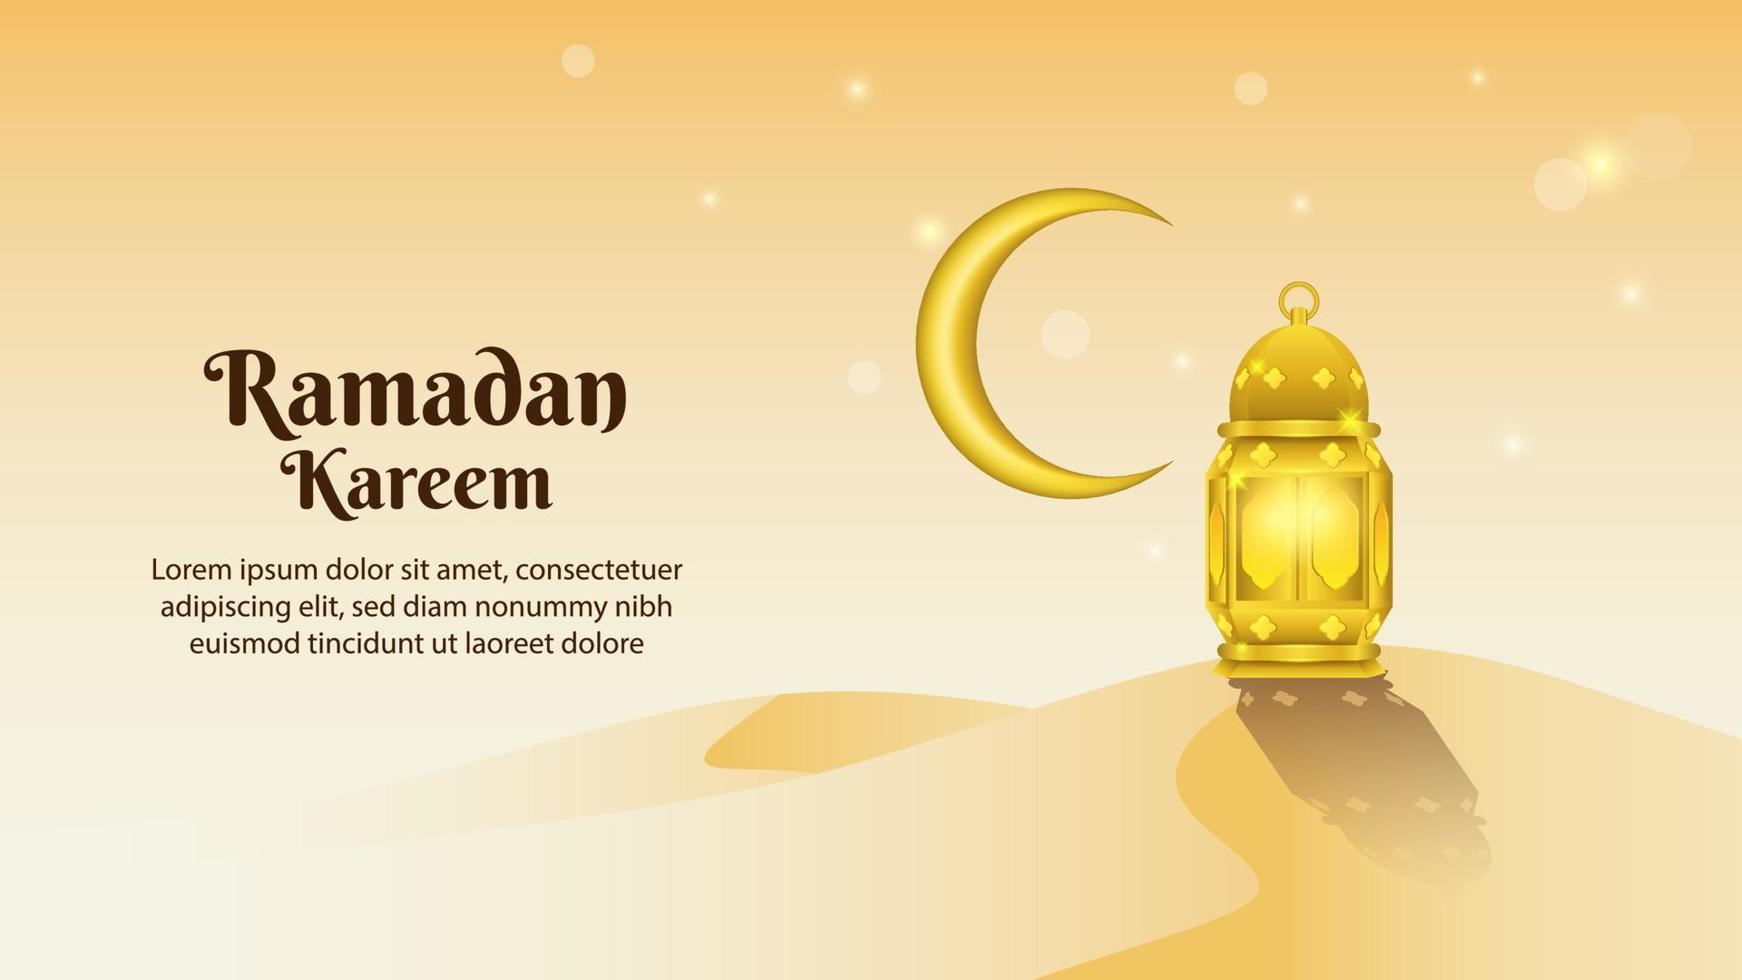 lanterna dorata e luna crescente nel deserto. sfondo del ramadan. vettore